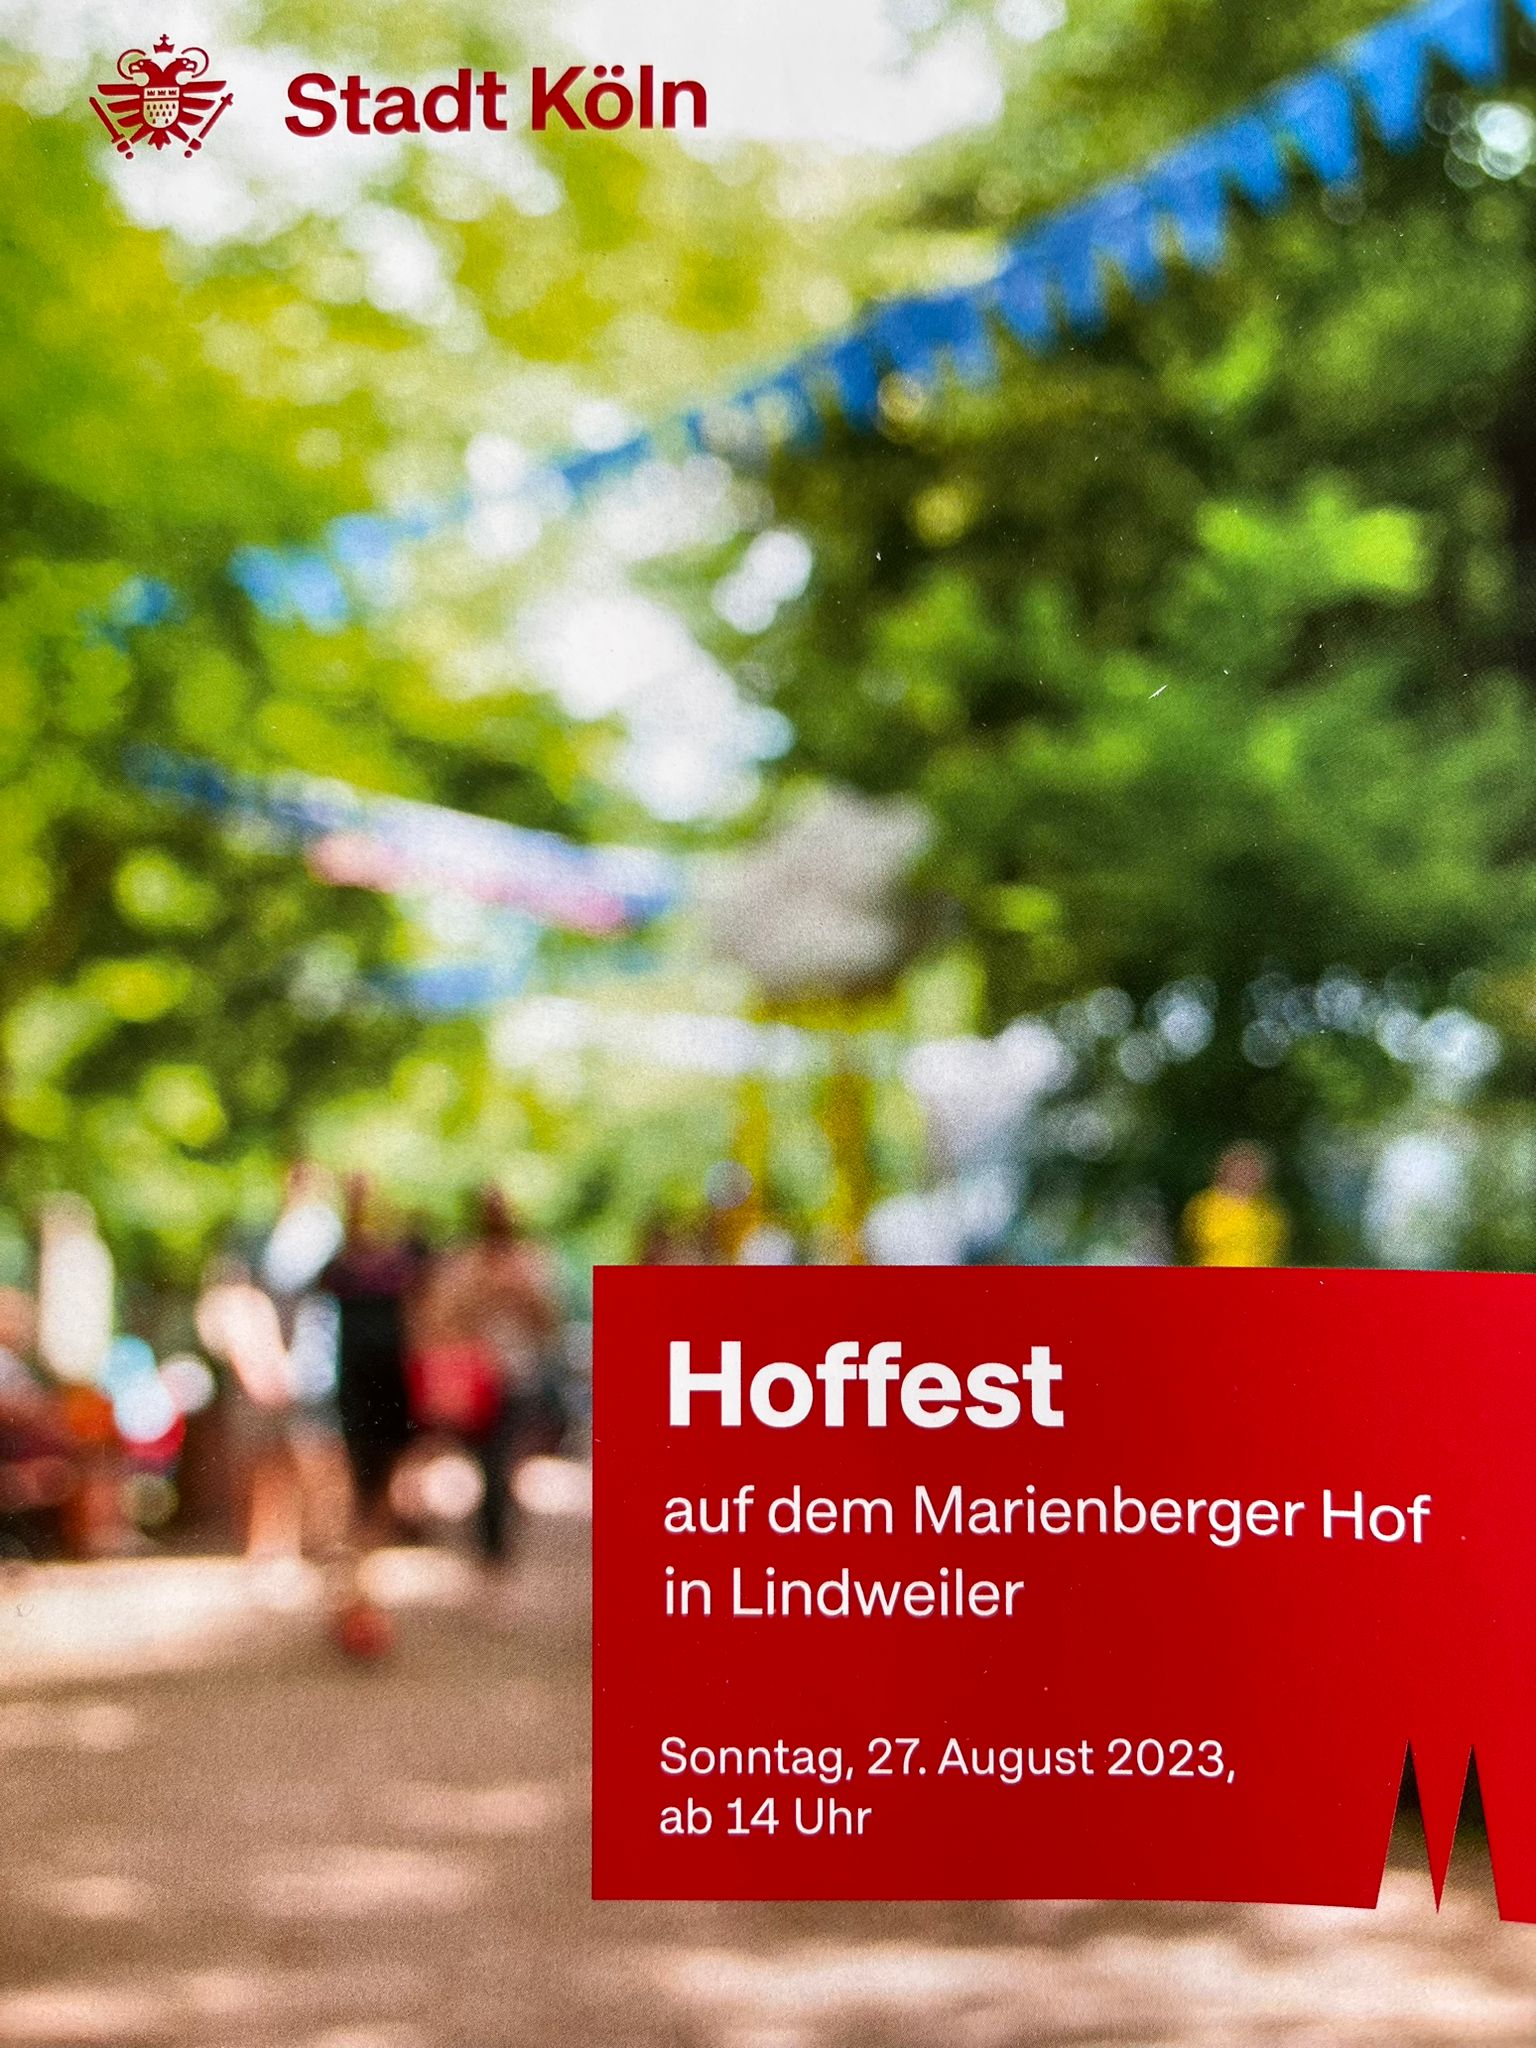 Hoffest